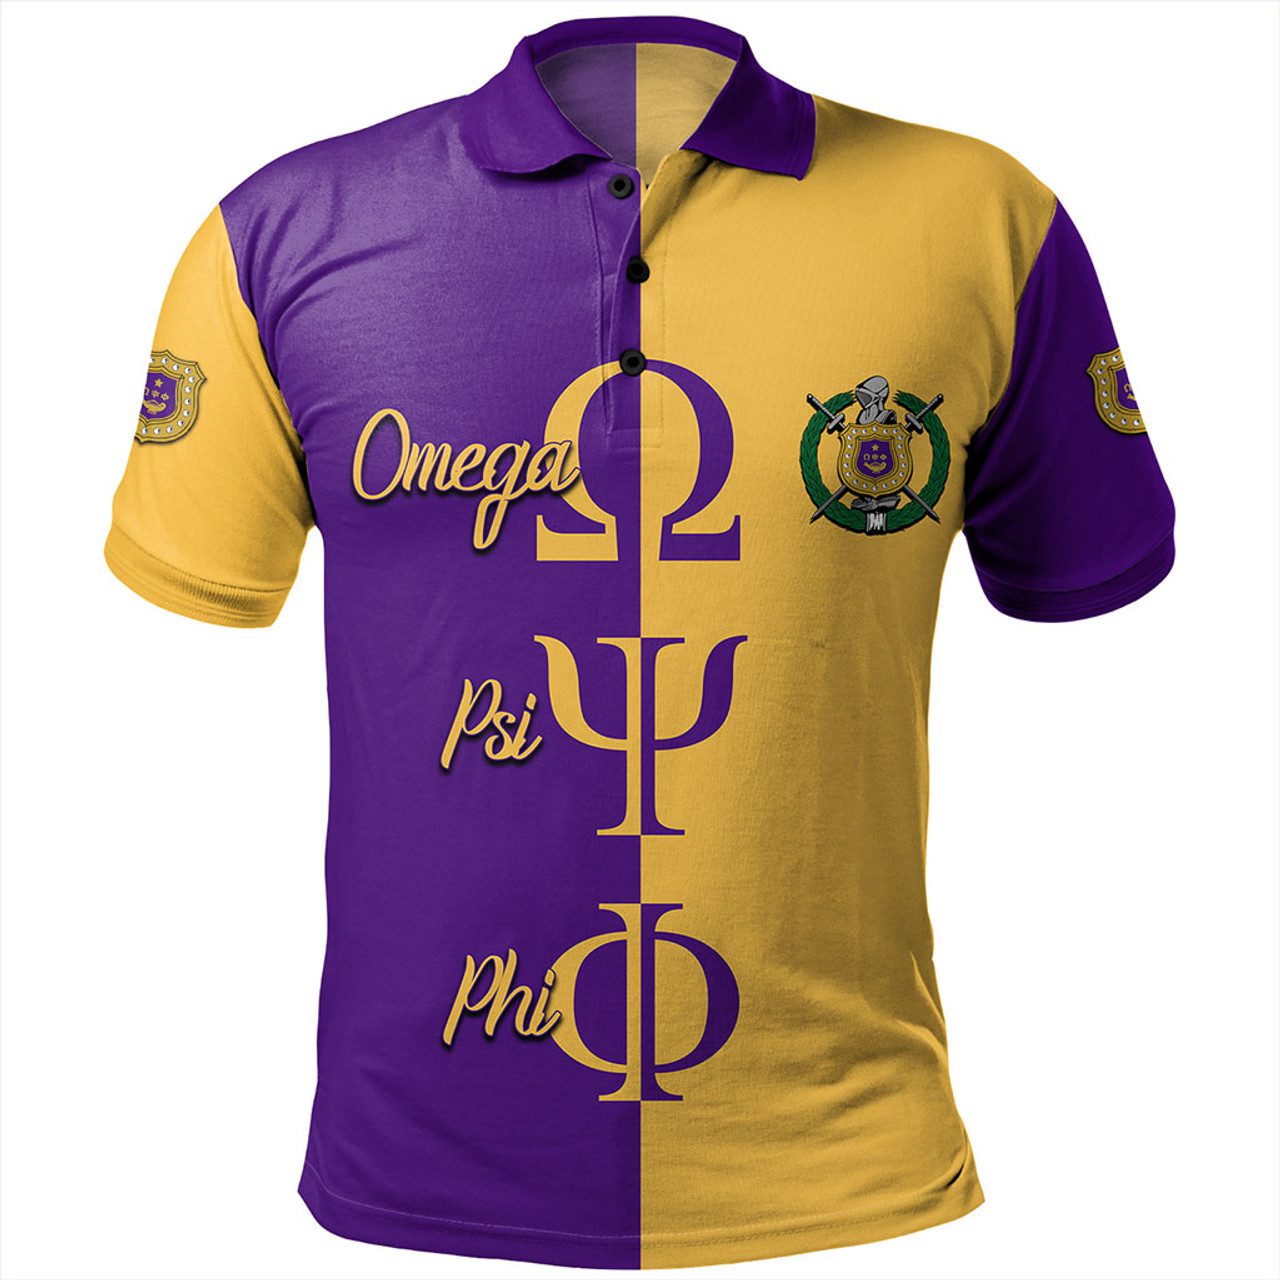 Omega Psi Phi Polo Shirt Half Style